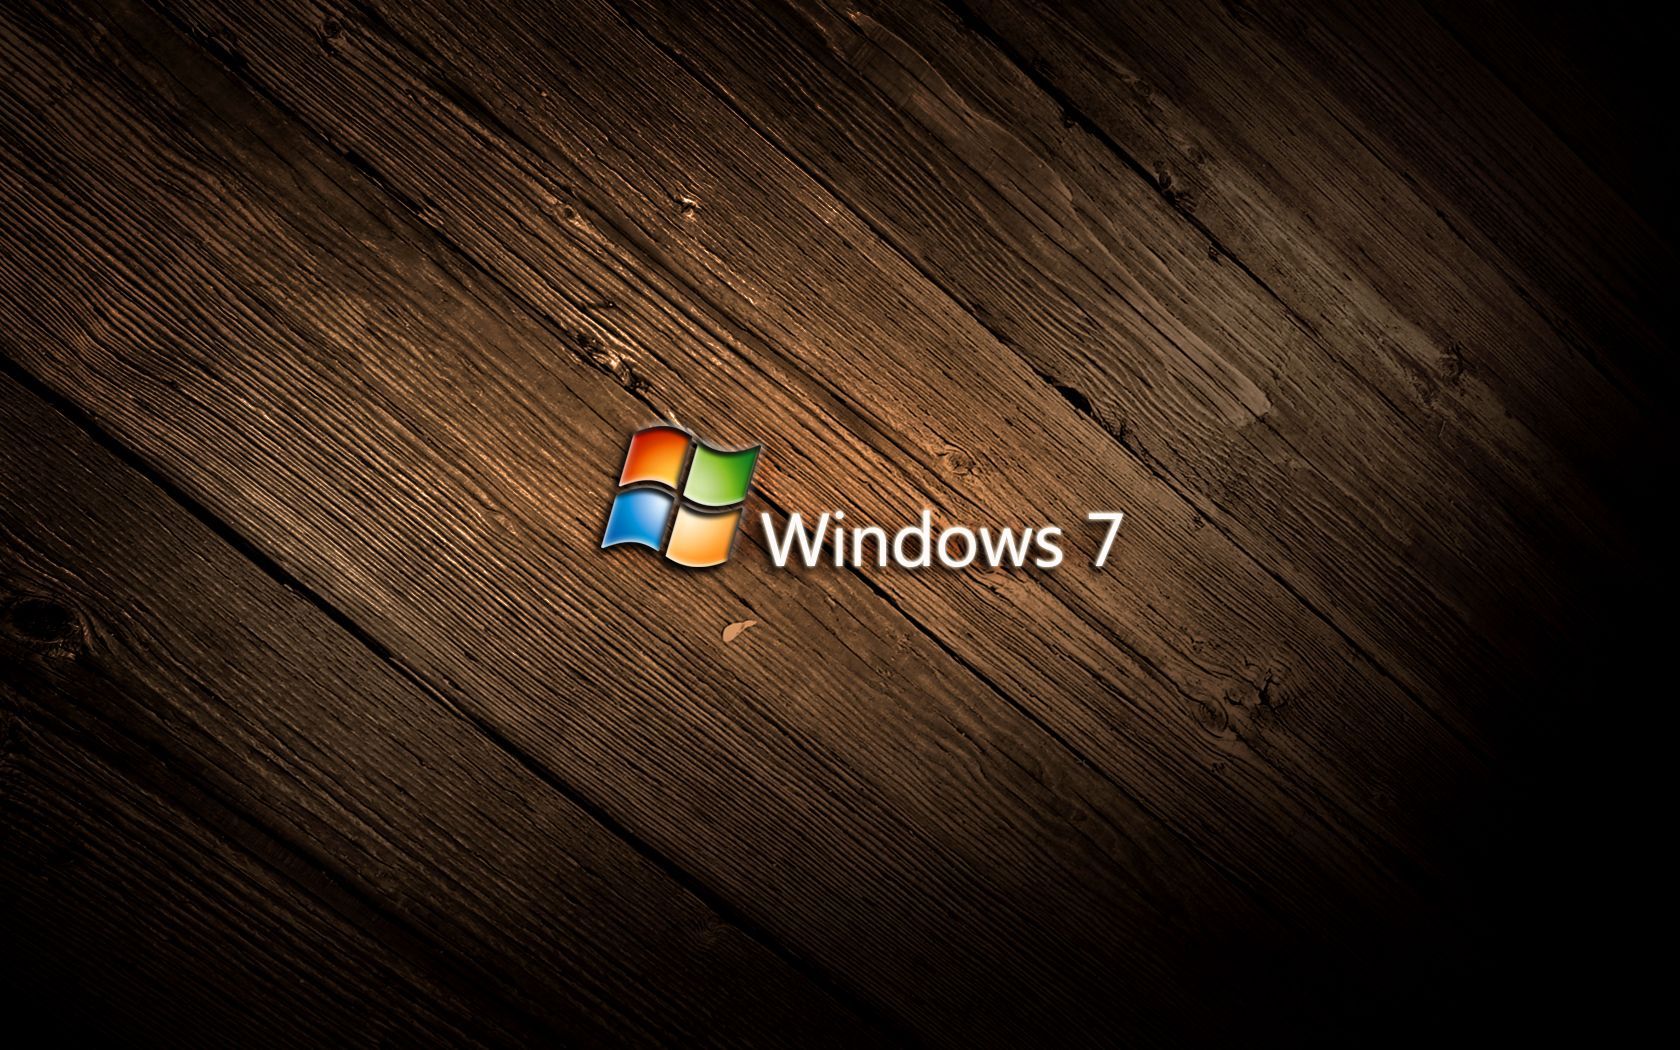 Fondos de pantalla geniales para Windows 7 Gallery